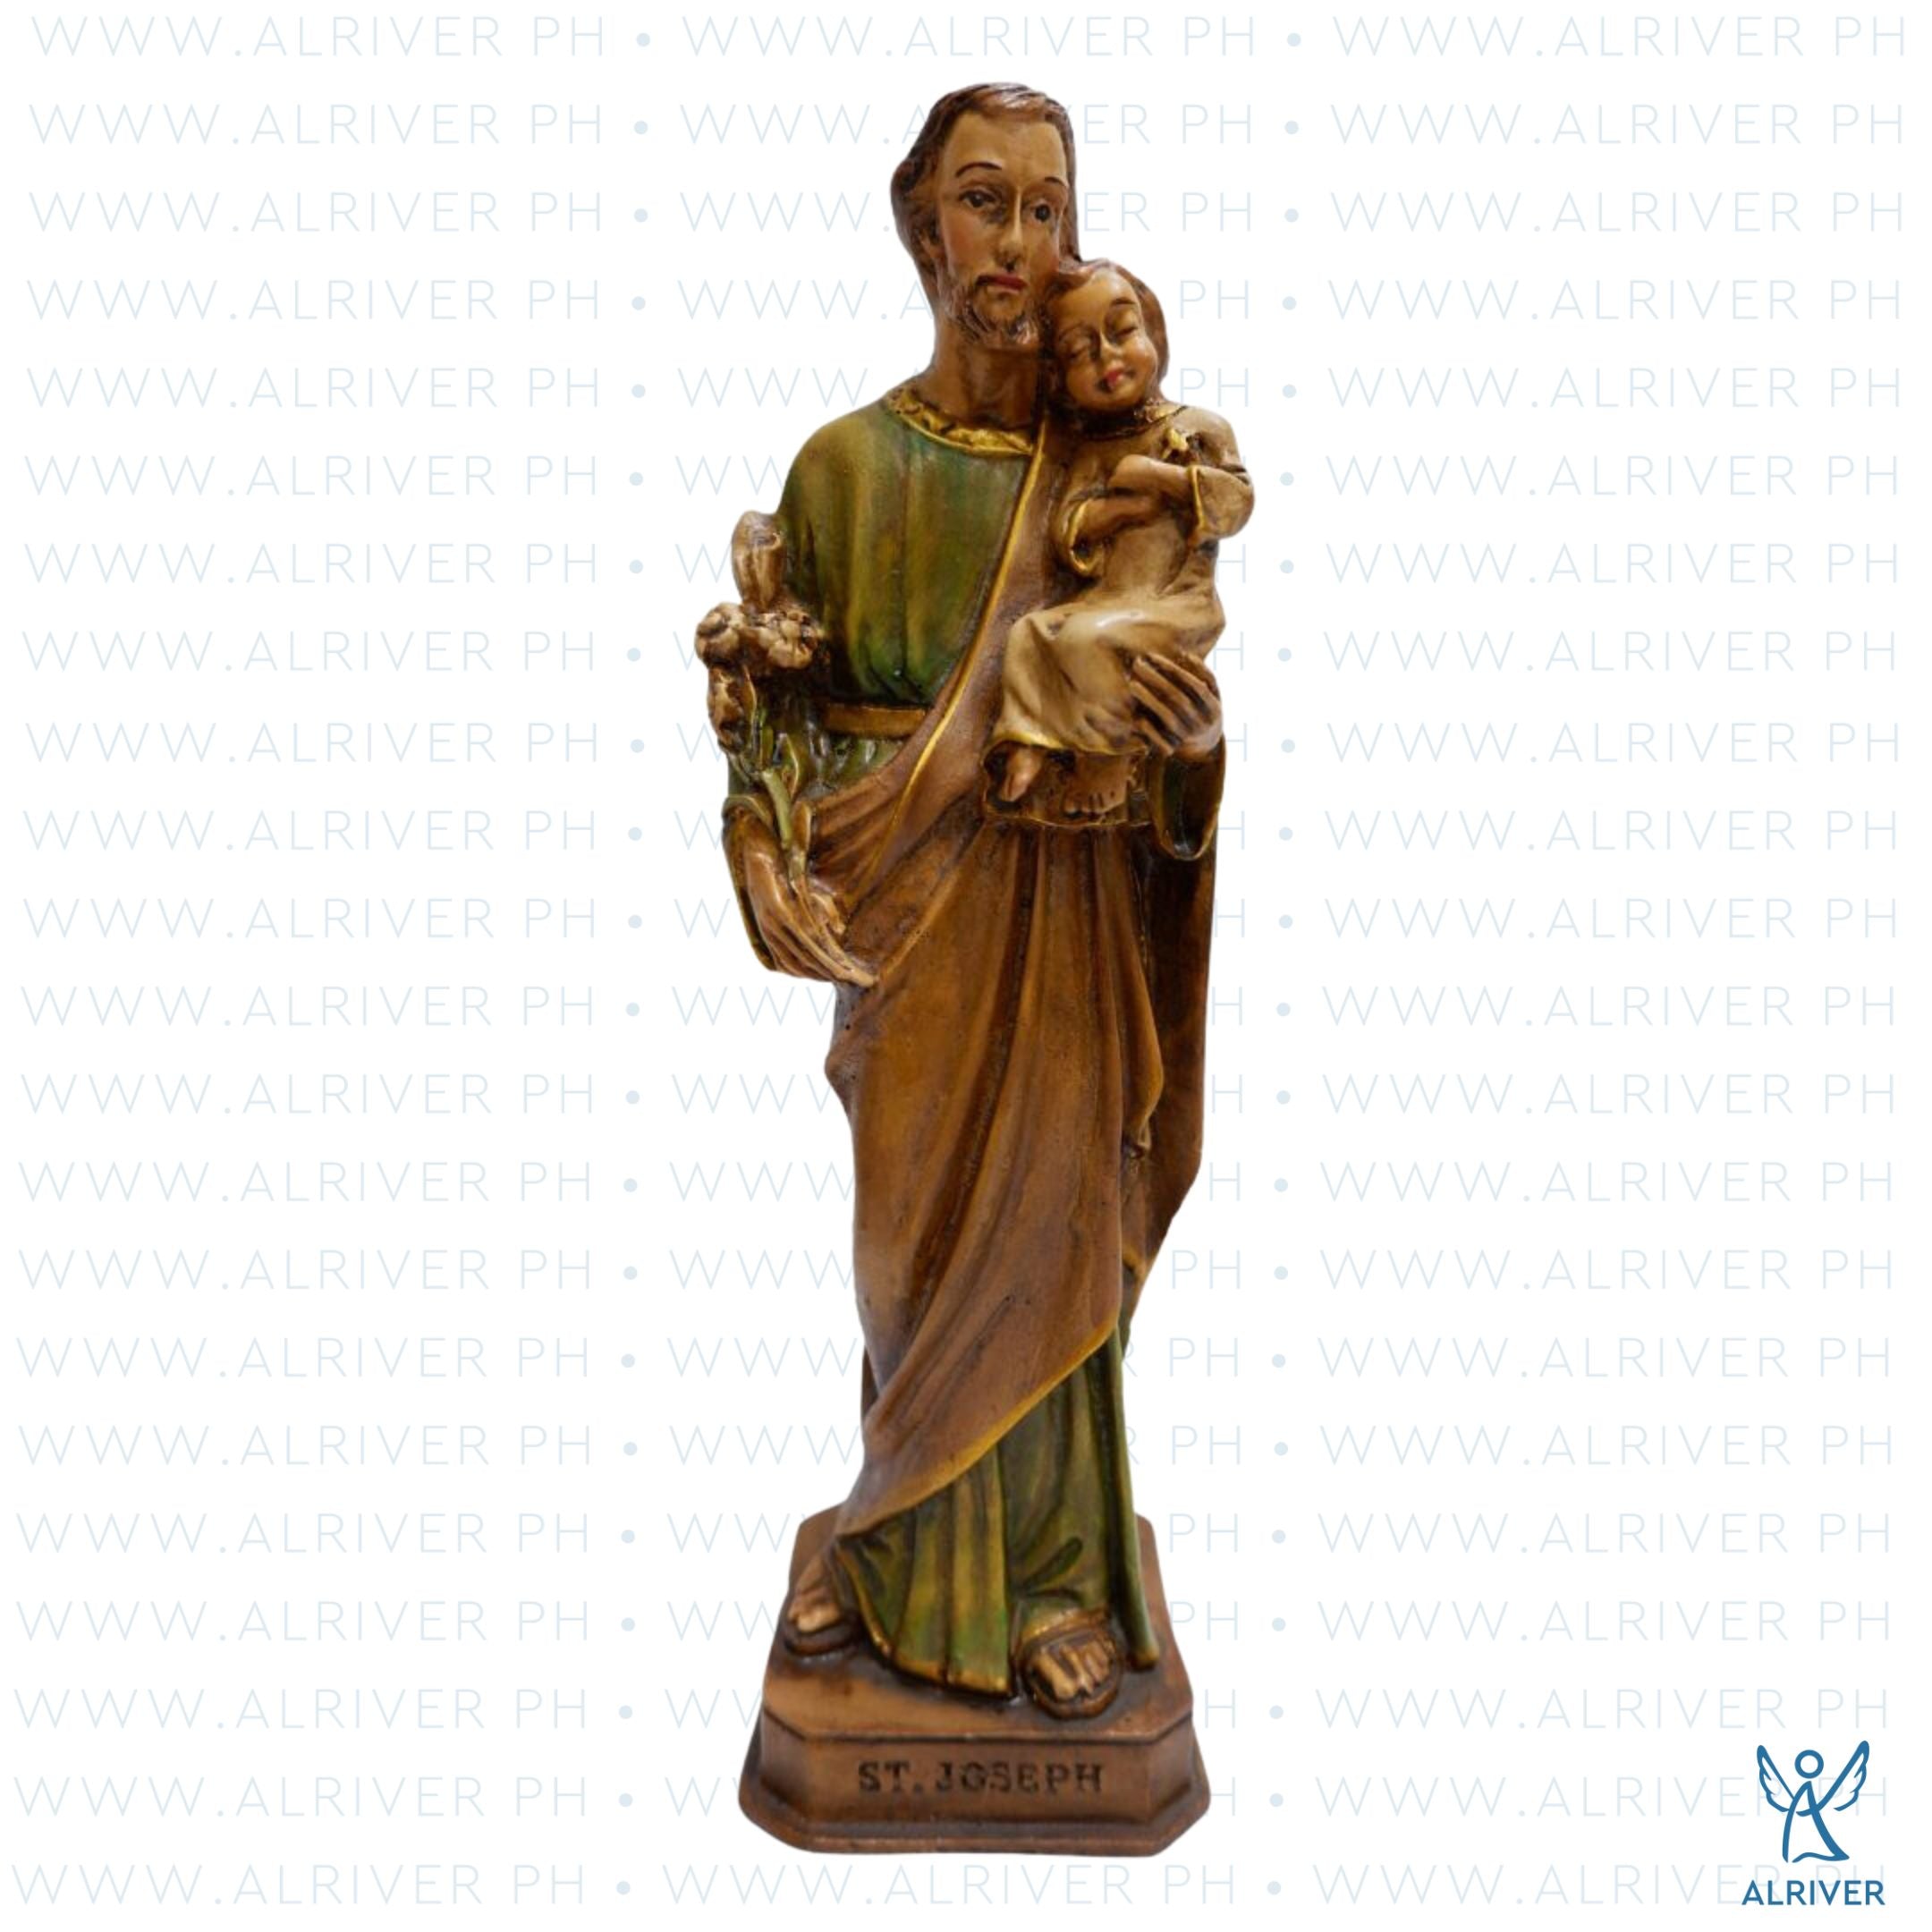 St. Joseph with Baby Jesus